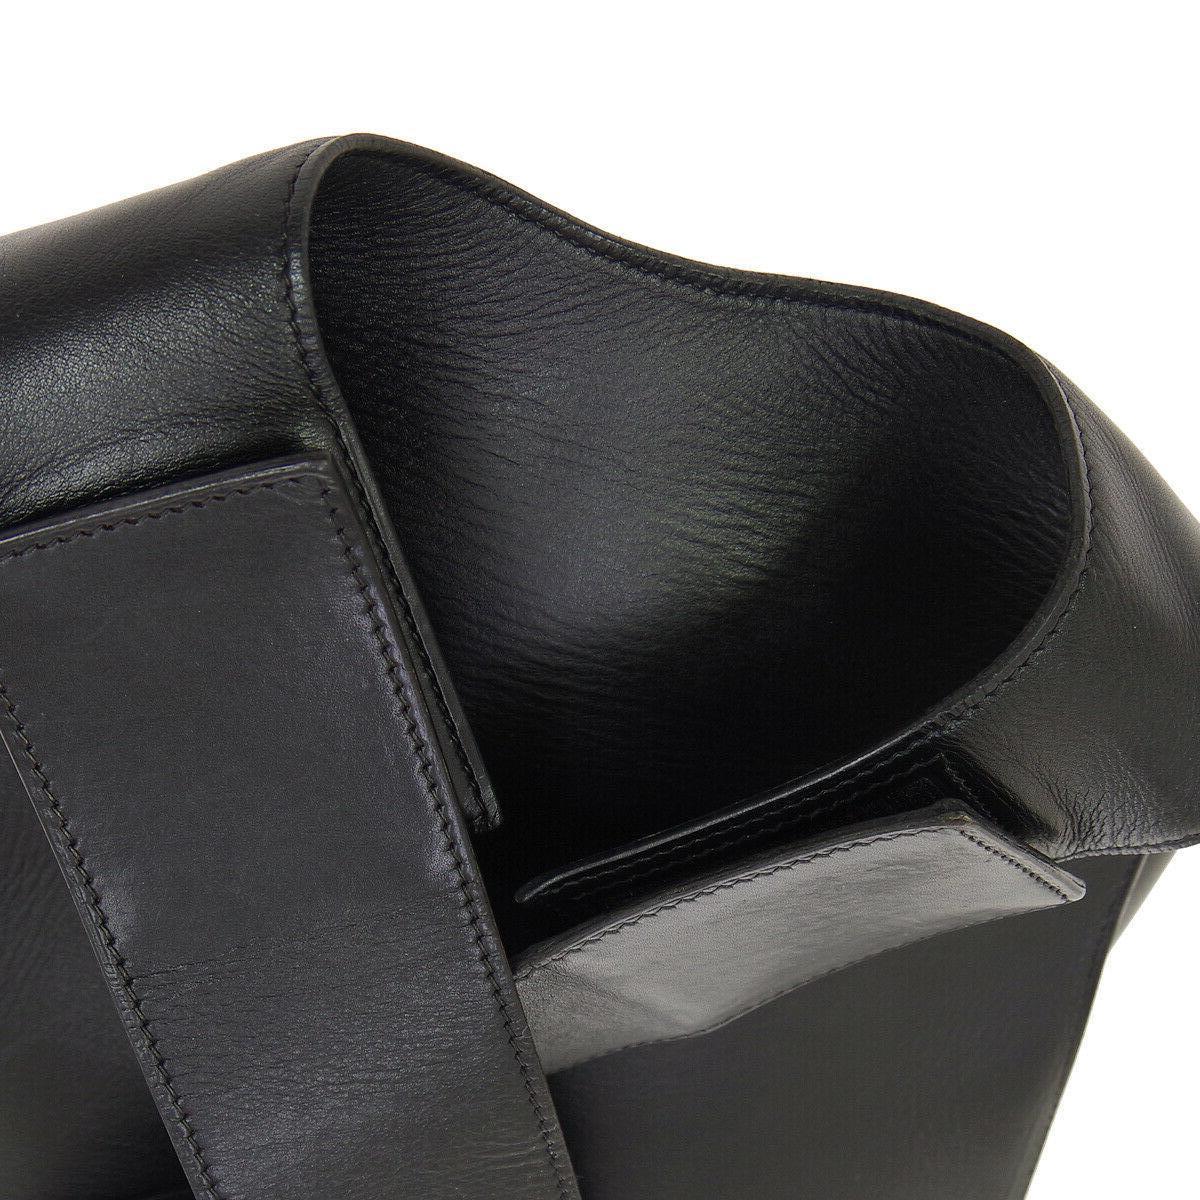 Hermes Black Leather Men's Women's Carryall Travel Shoulder Backpack Bag

Leather
Velcro closure
Made in France
Adjustable shoulder strap 17